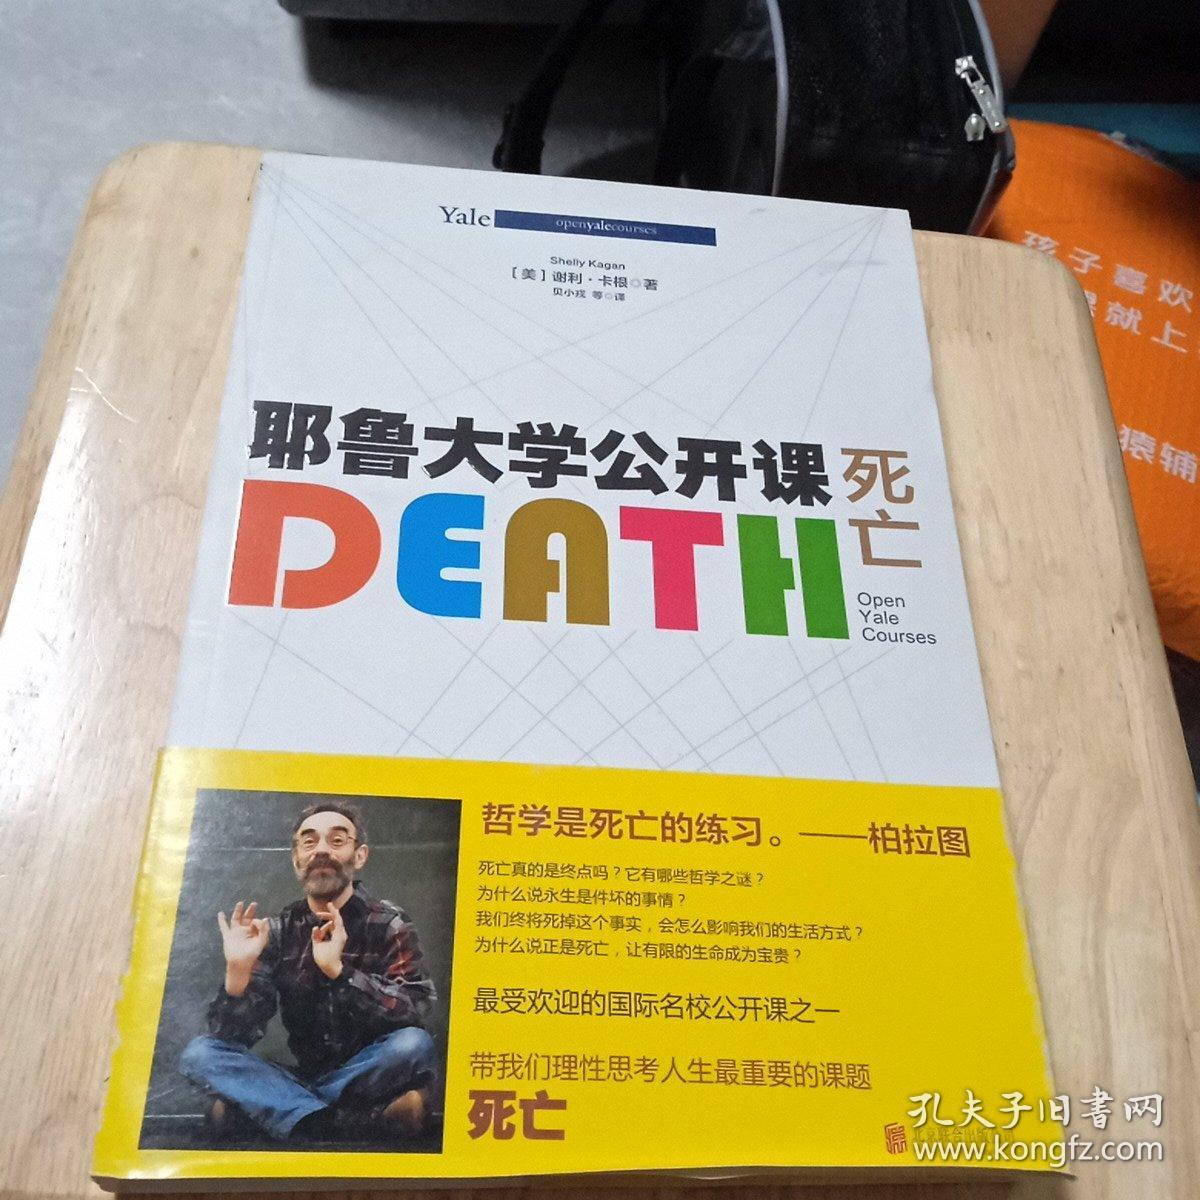 百分百正版  耶鲁大学公开课:死亡    [美]谢利·卡根    贝小戎    北京联合出版公司